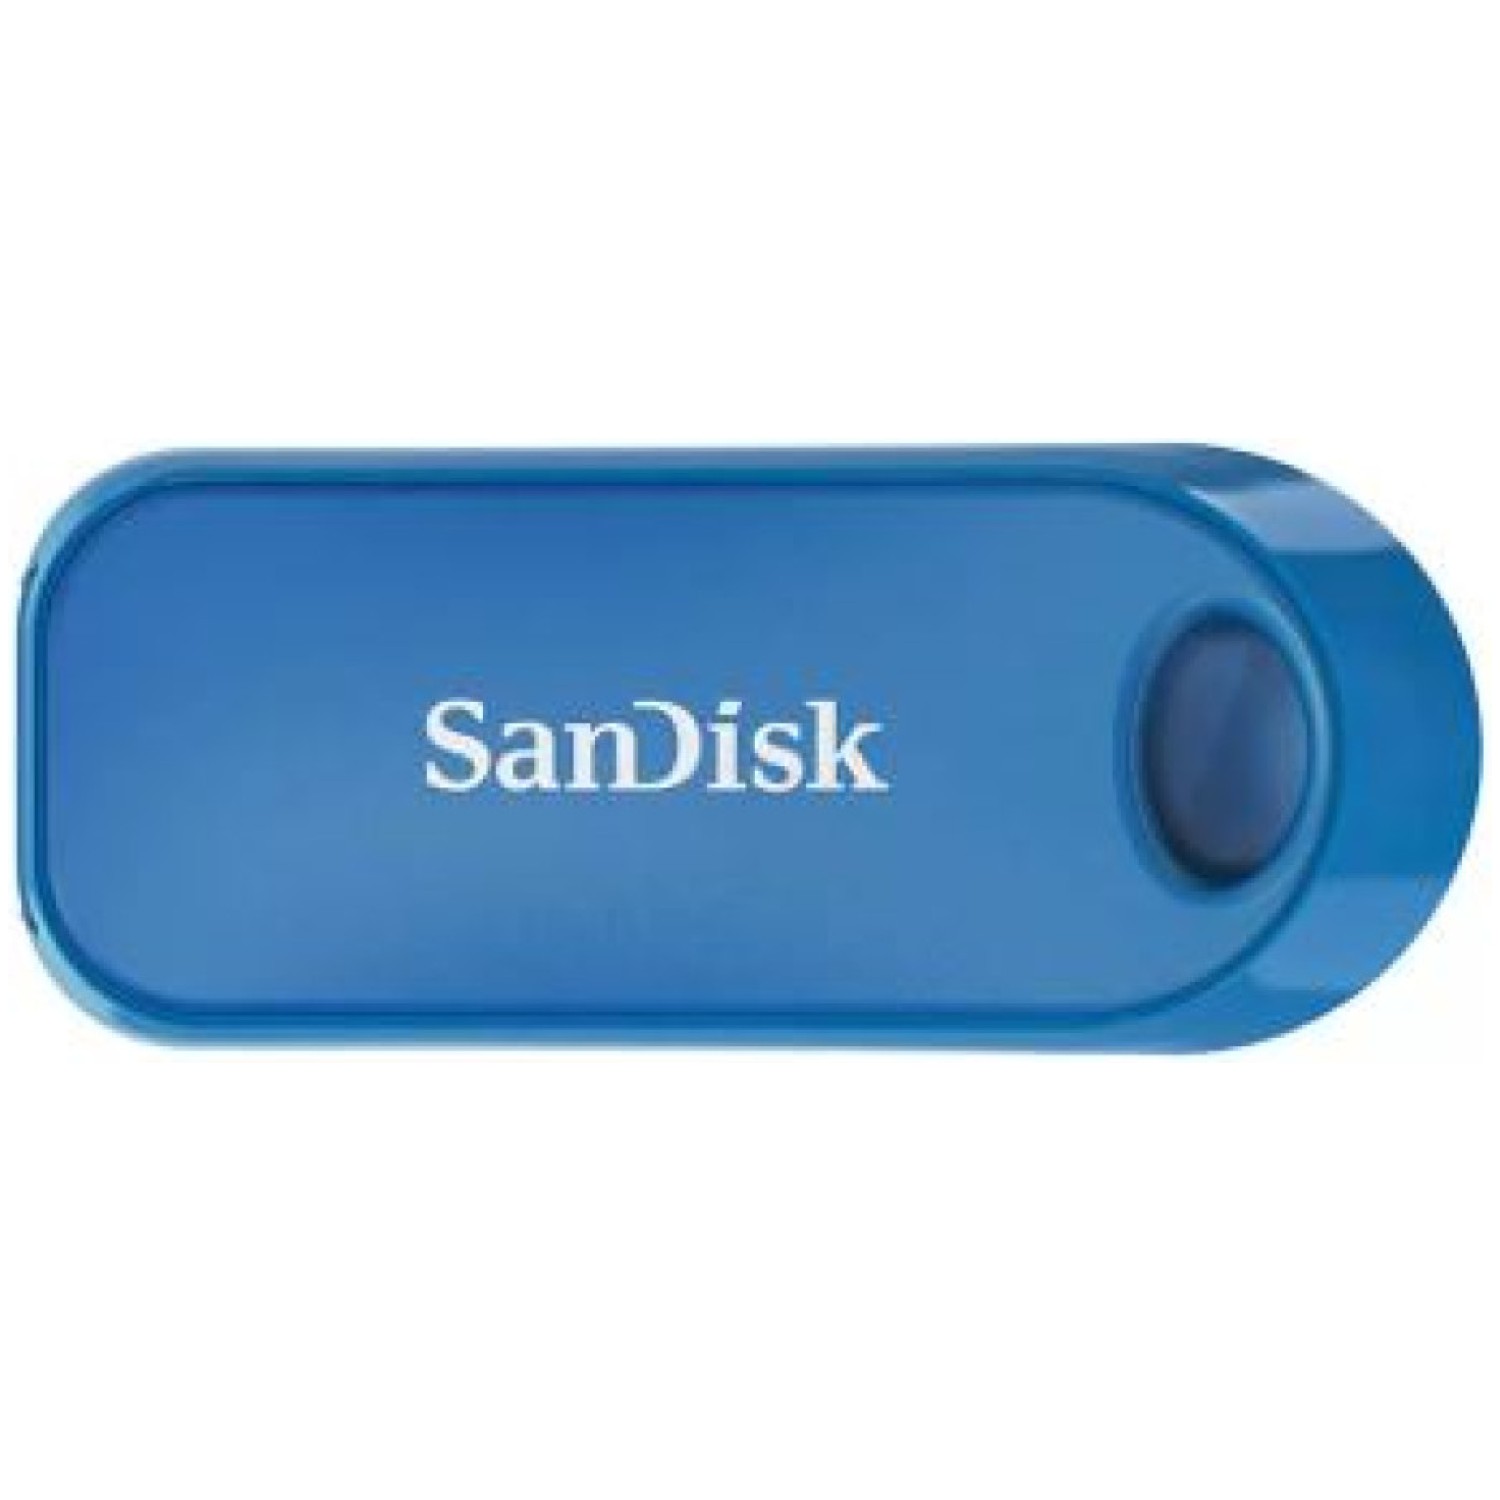 Spominski ključek 32GB USB 2.0 Sandisk Cruzer SNAP - plastičen/drsni/moder (SDCZ62-032G-G35B)